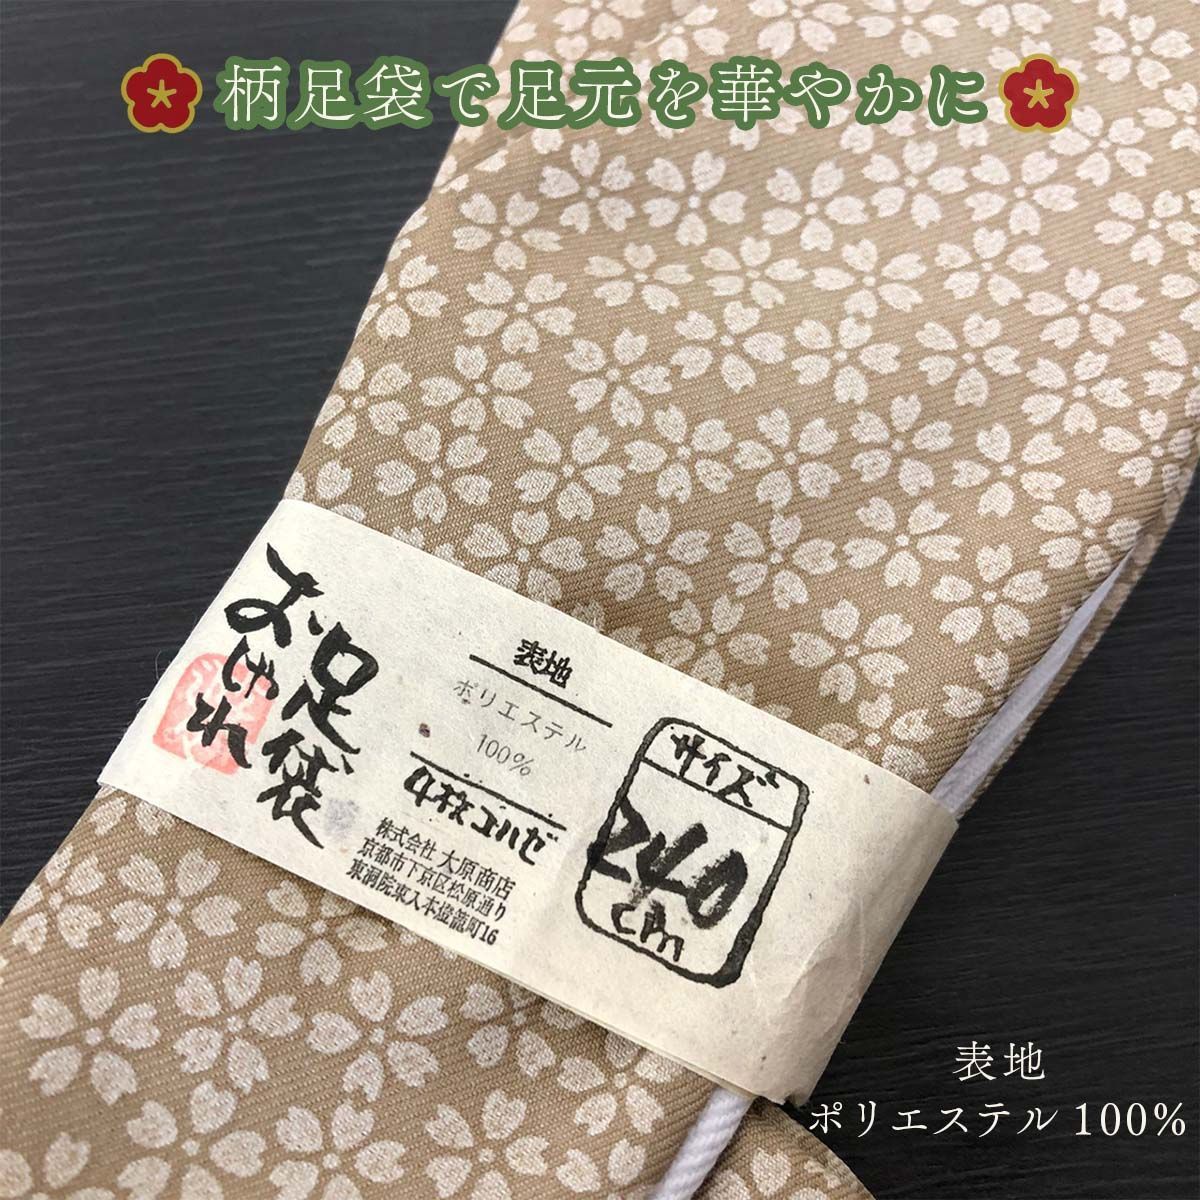 日本最大の 新品 3点セット 夏用 福助足袋 25.5cm 4枚コハゼ 晒裏